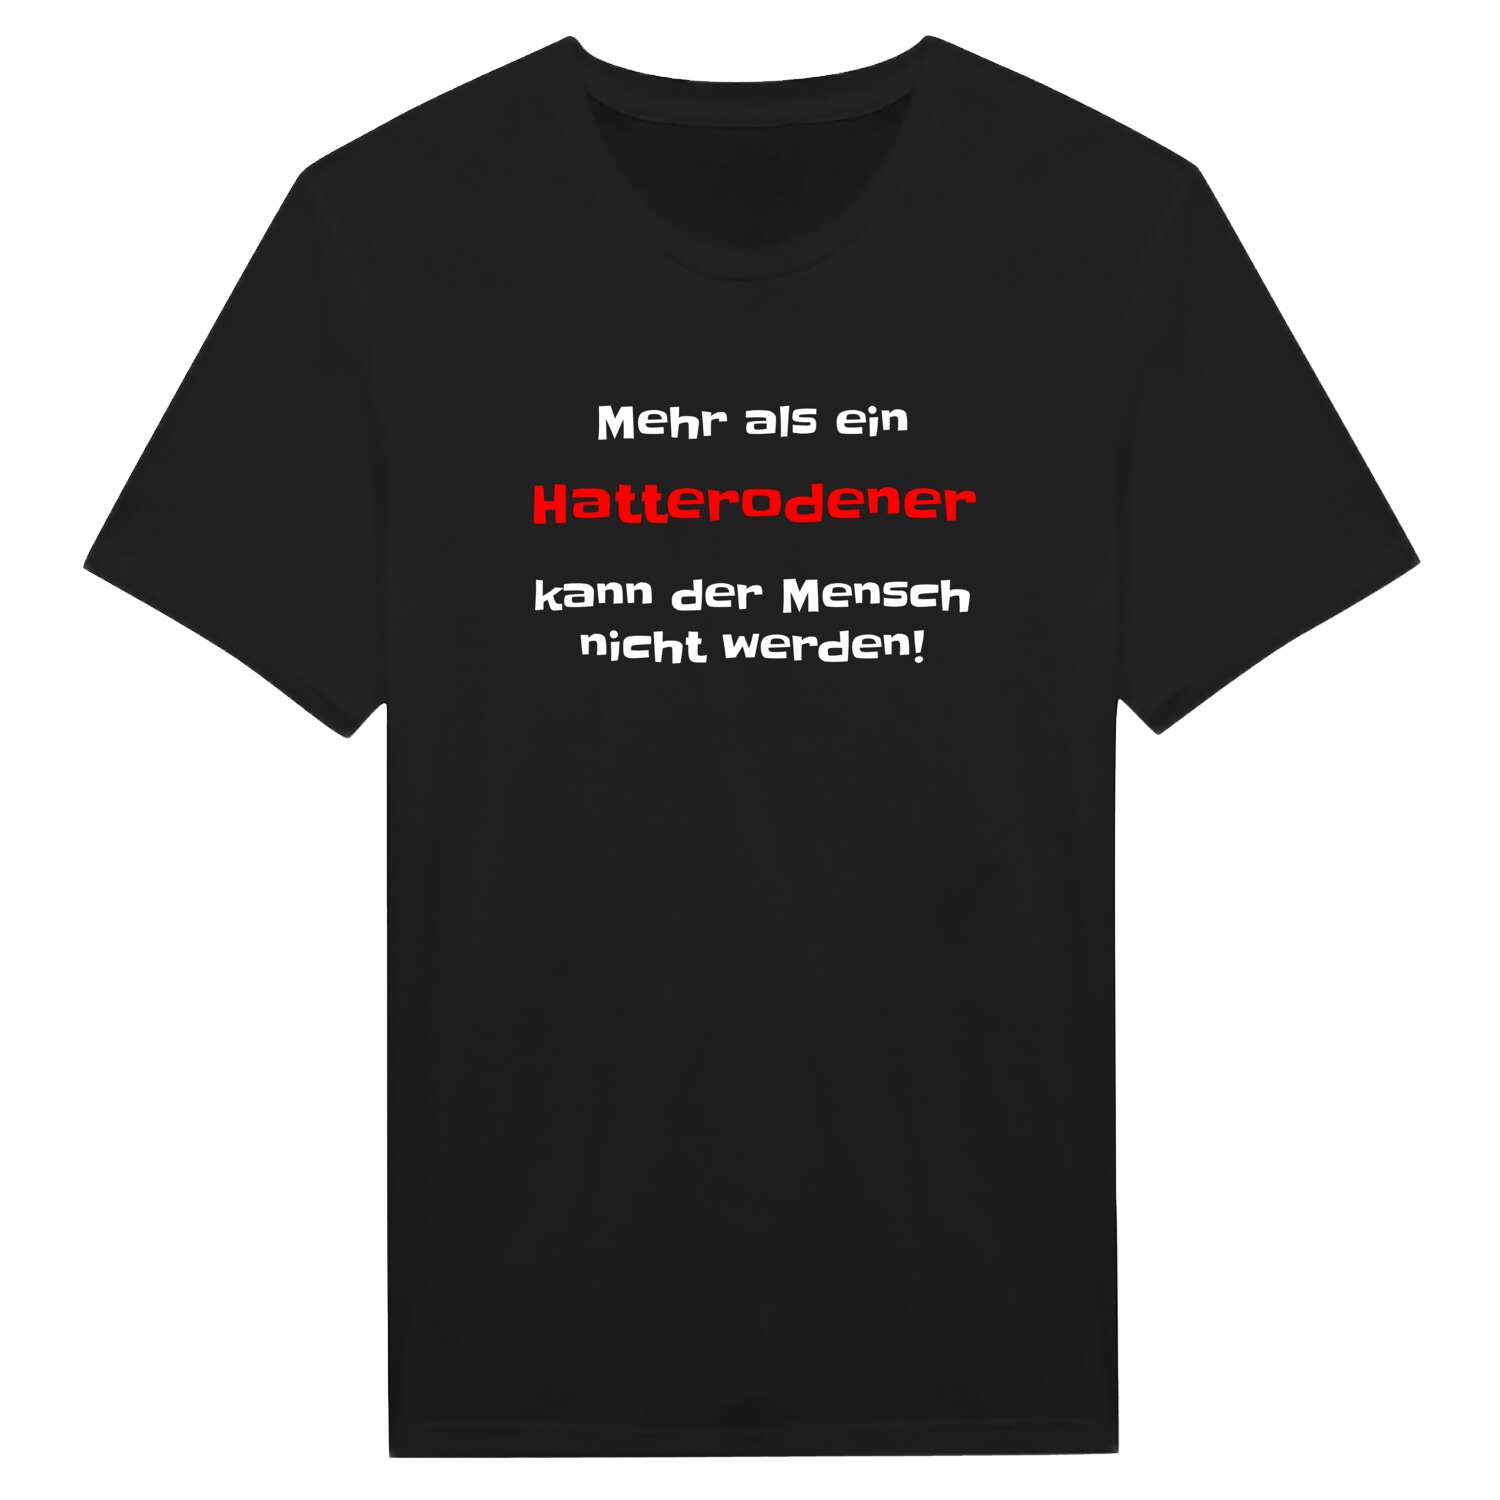 Hatterode T-Shirt »Mehr als ein«